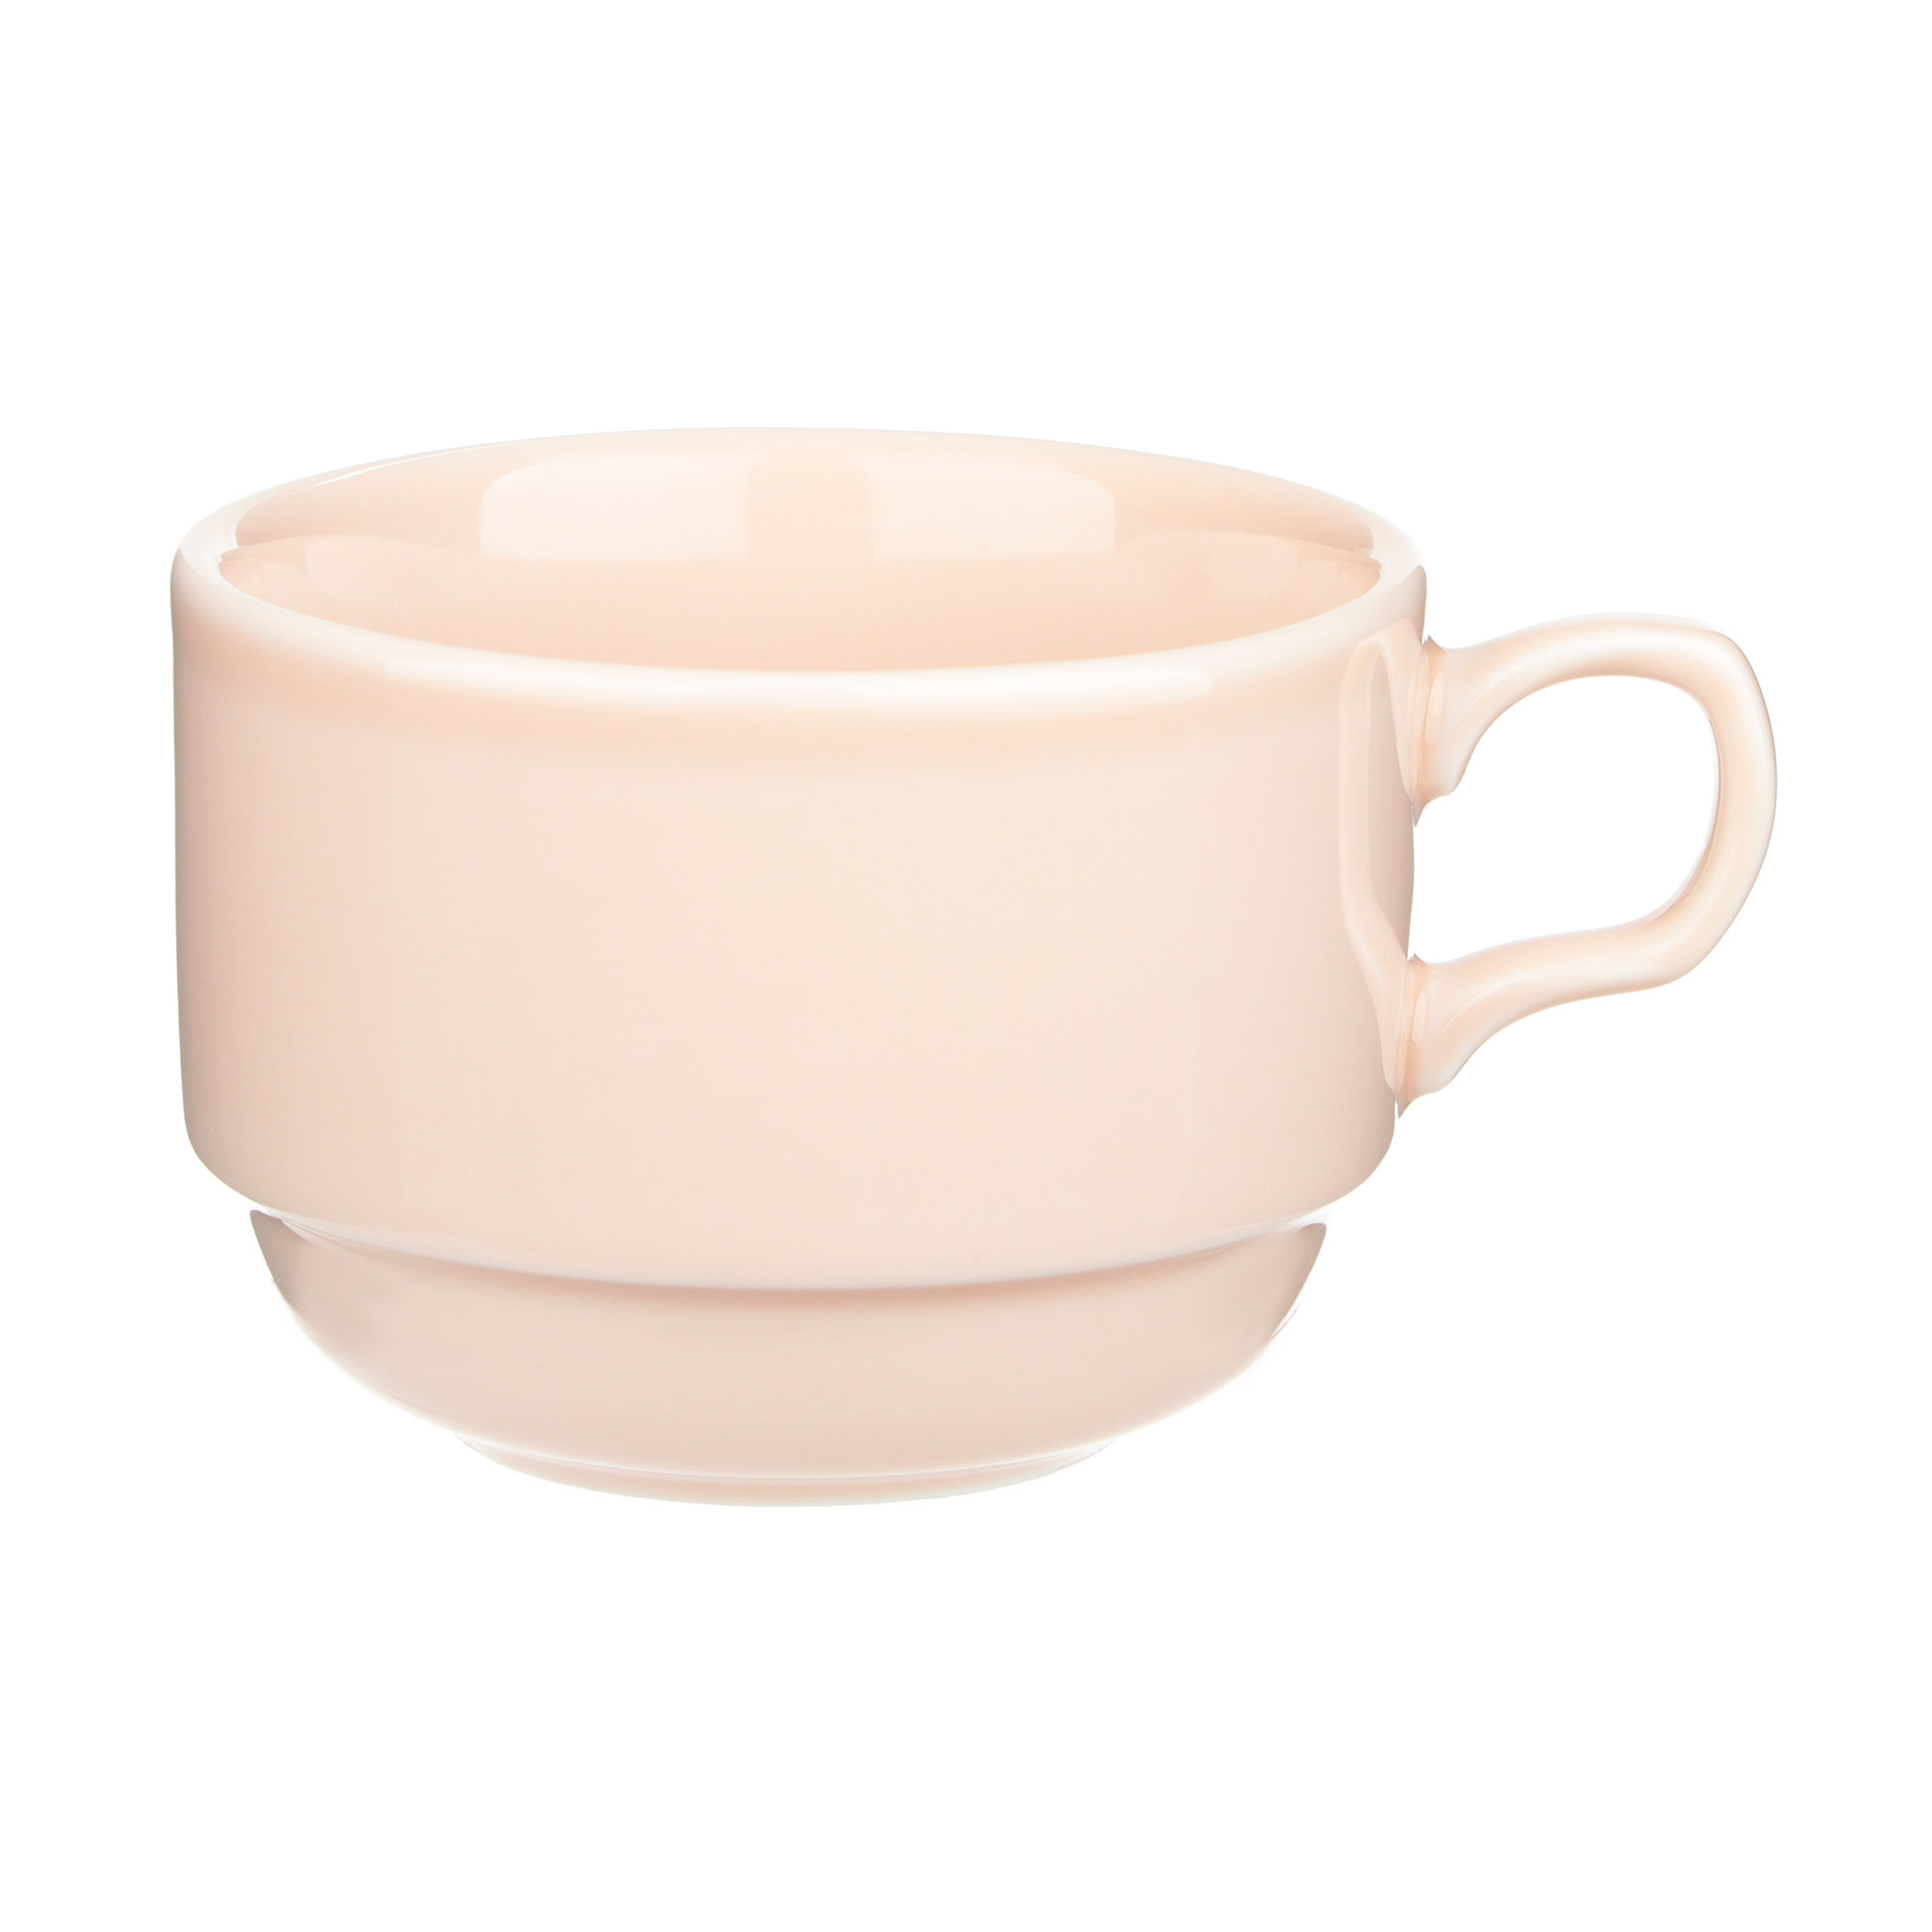 Чашка Башкирский фарфор Браво 250 мл розовый чашка чайная башкирский фарфор браво 250 мл серая